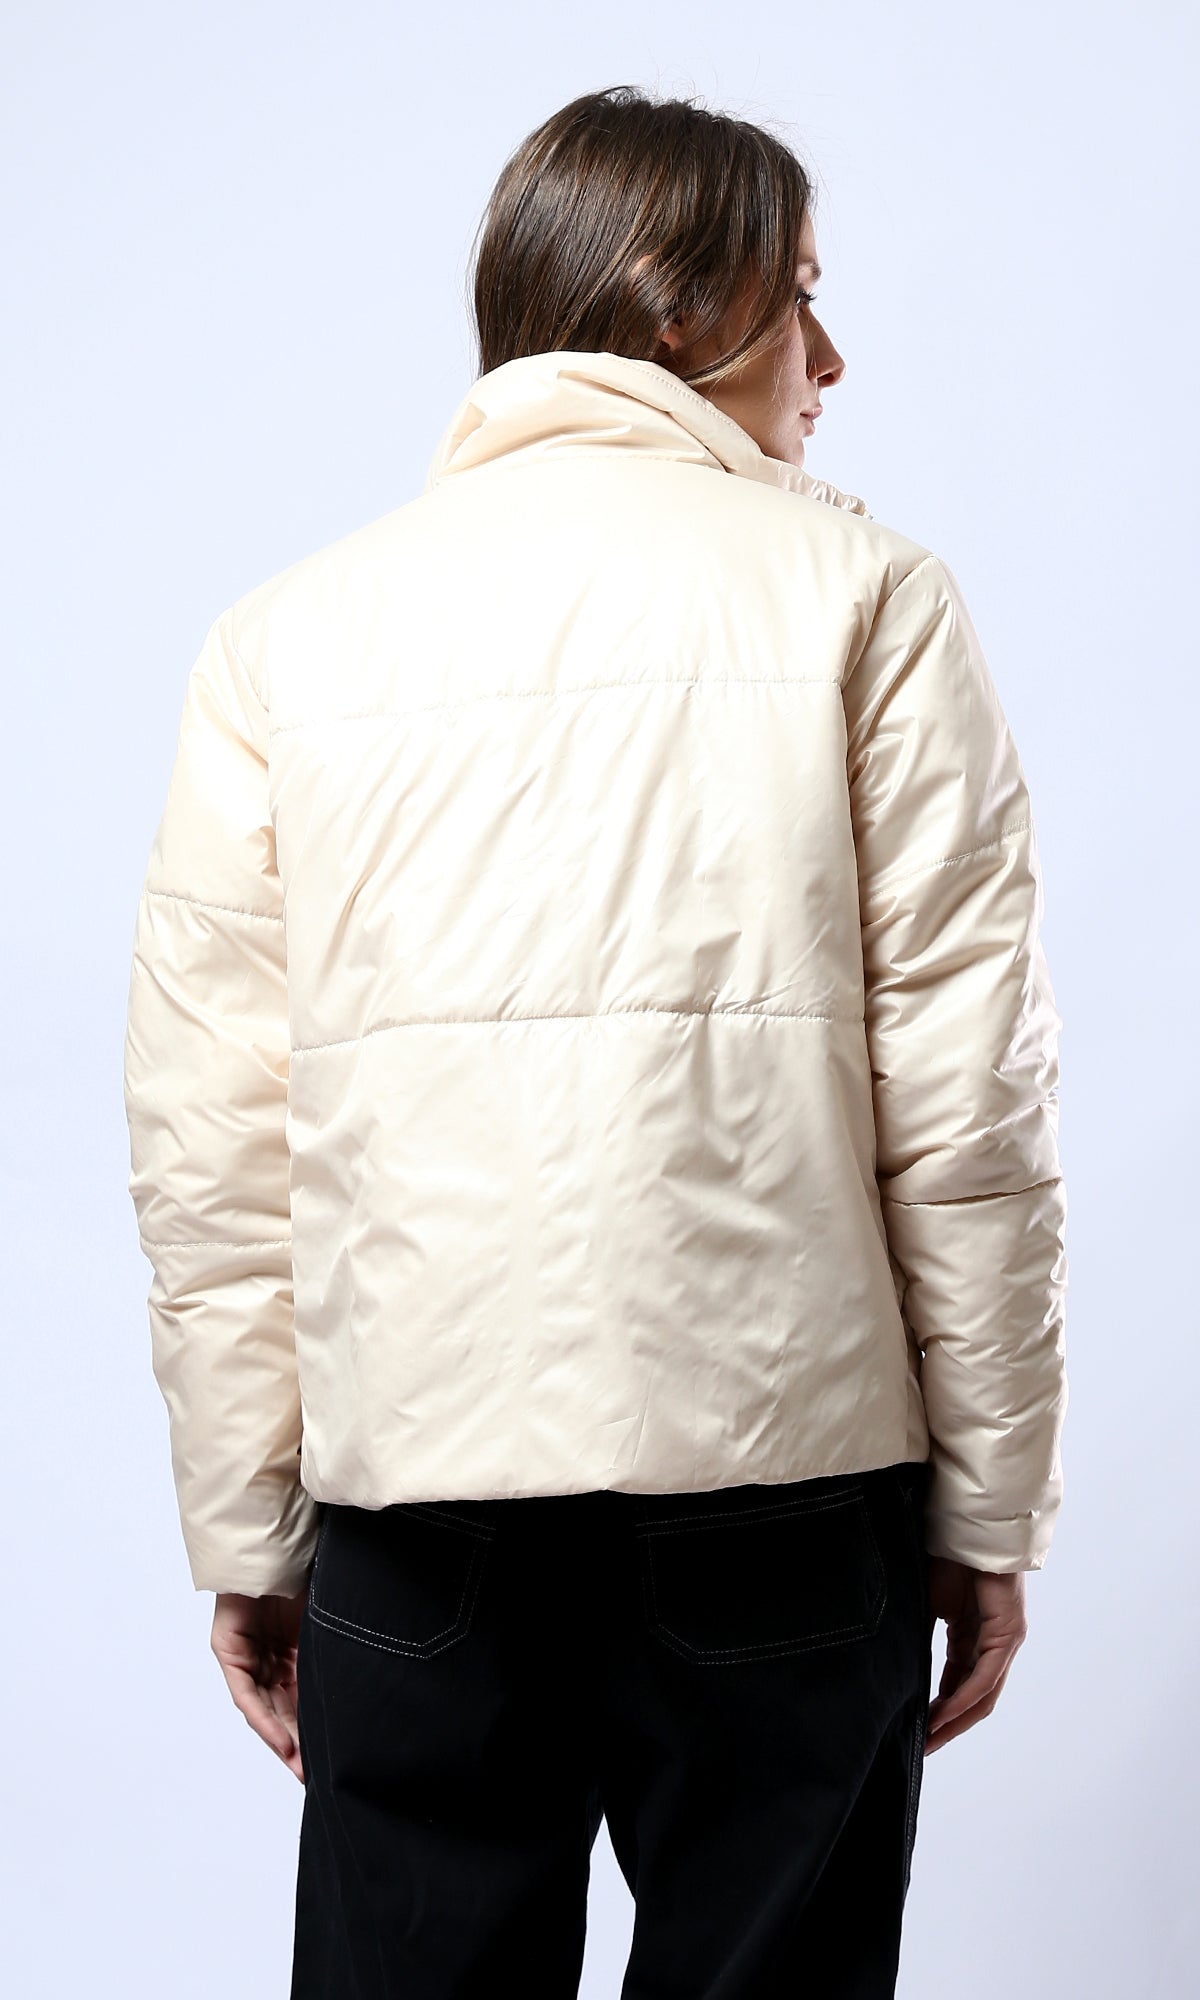 O180576 Light Beige Waterproof Jacket With Side Pockets